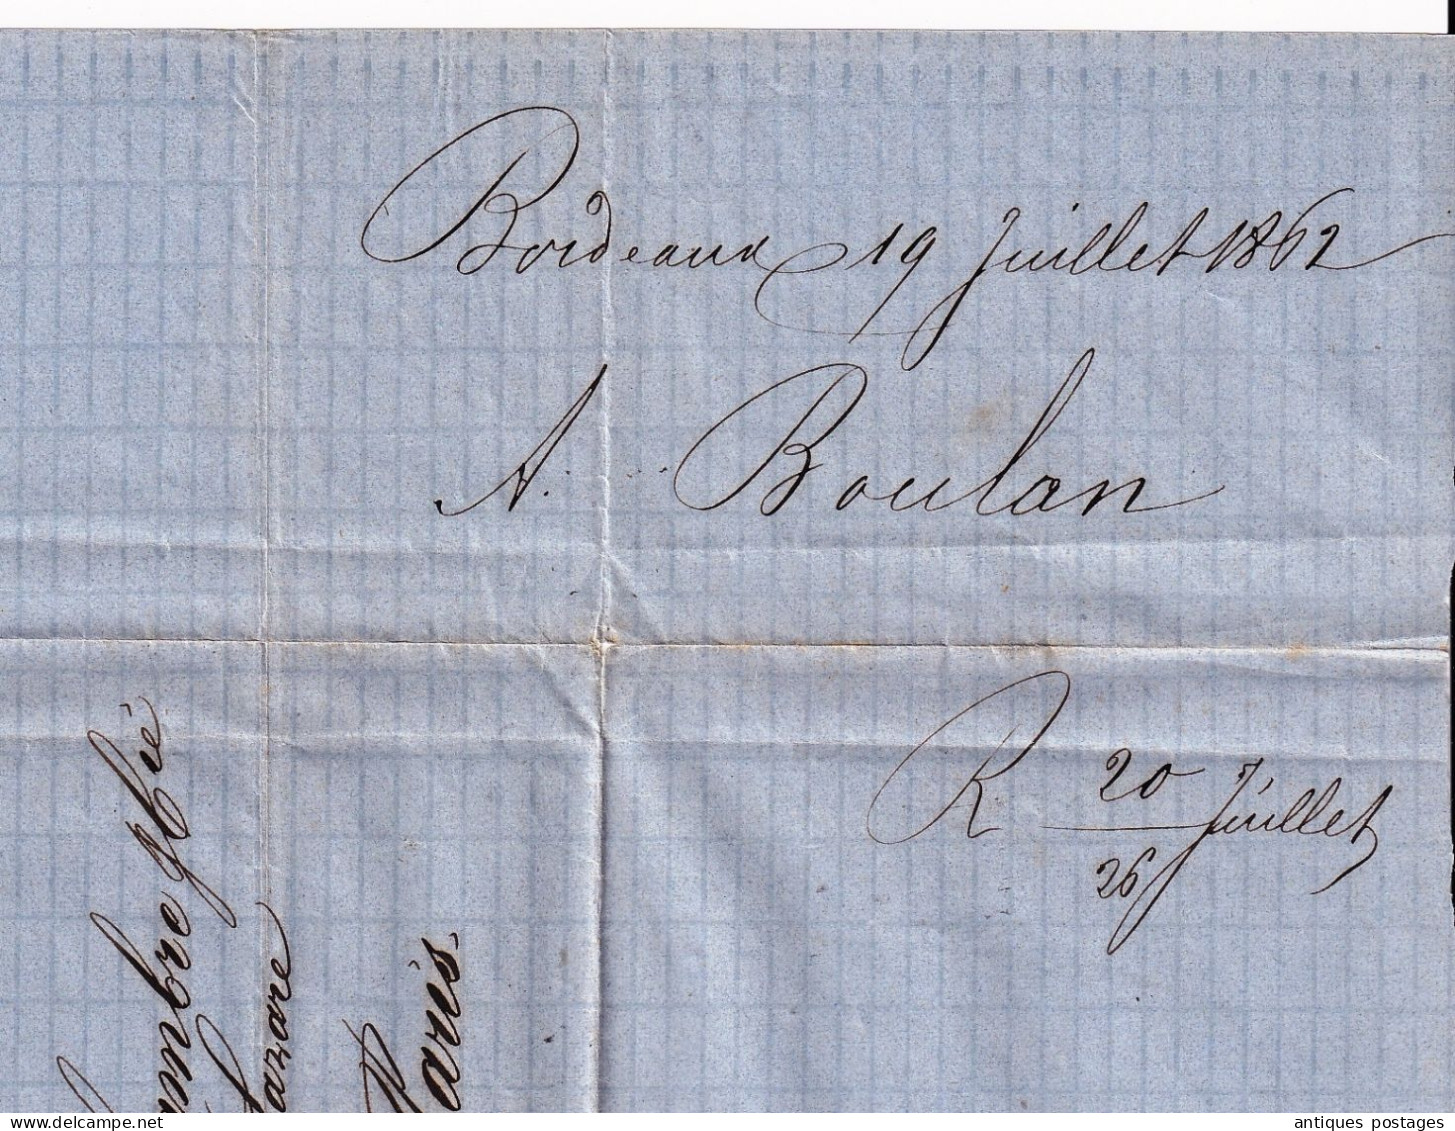 LSC 1862 Napoléon III Empire non dentelé Bordeaux Gironde pour Paris Adolphe Boulan